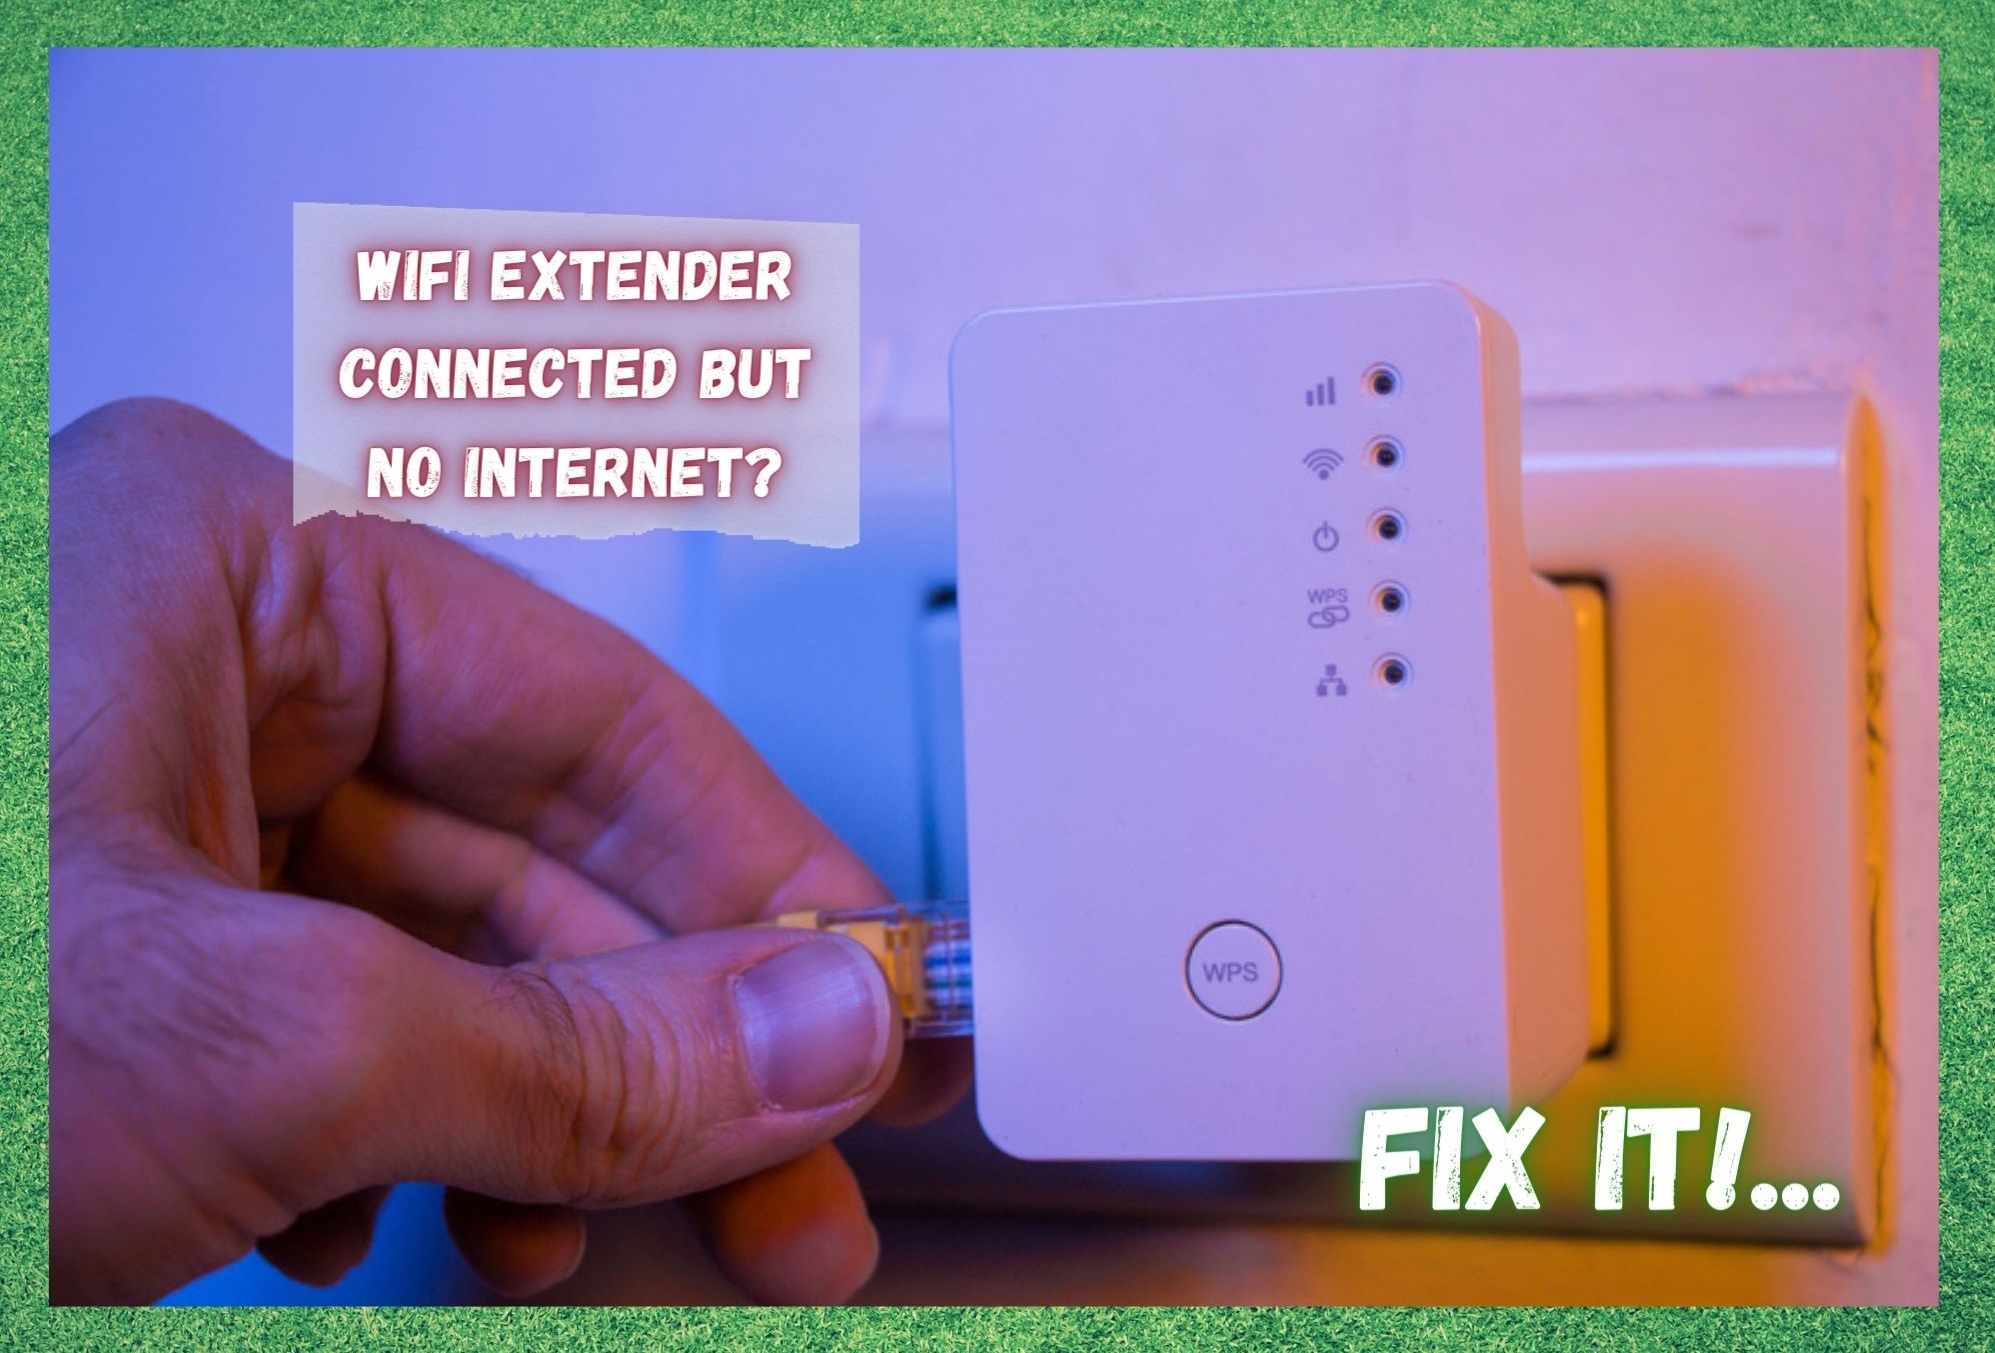 WiFi एक्स्टेंडर कनेक्ट केलेले आहे परंतु इंटरनेट नाही: निराकरण करण्याचे 5 मार्ग